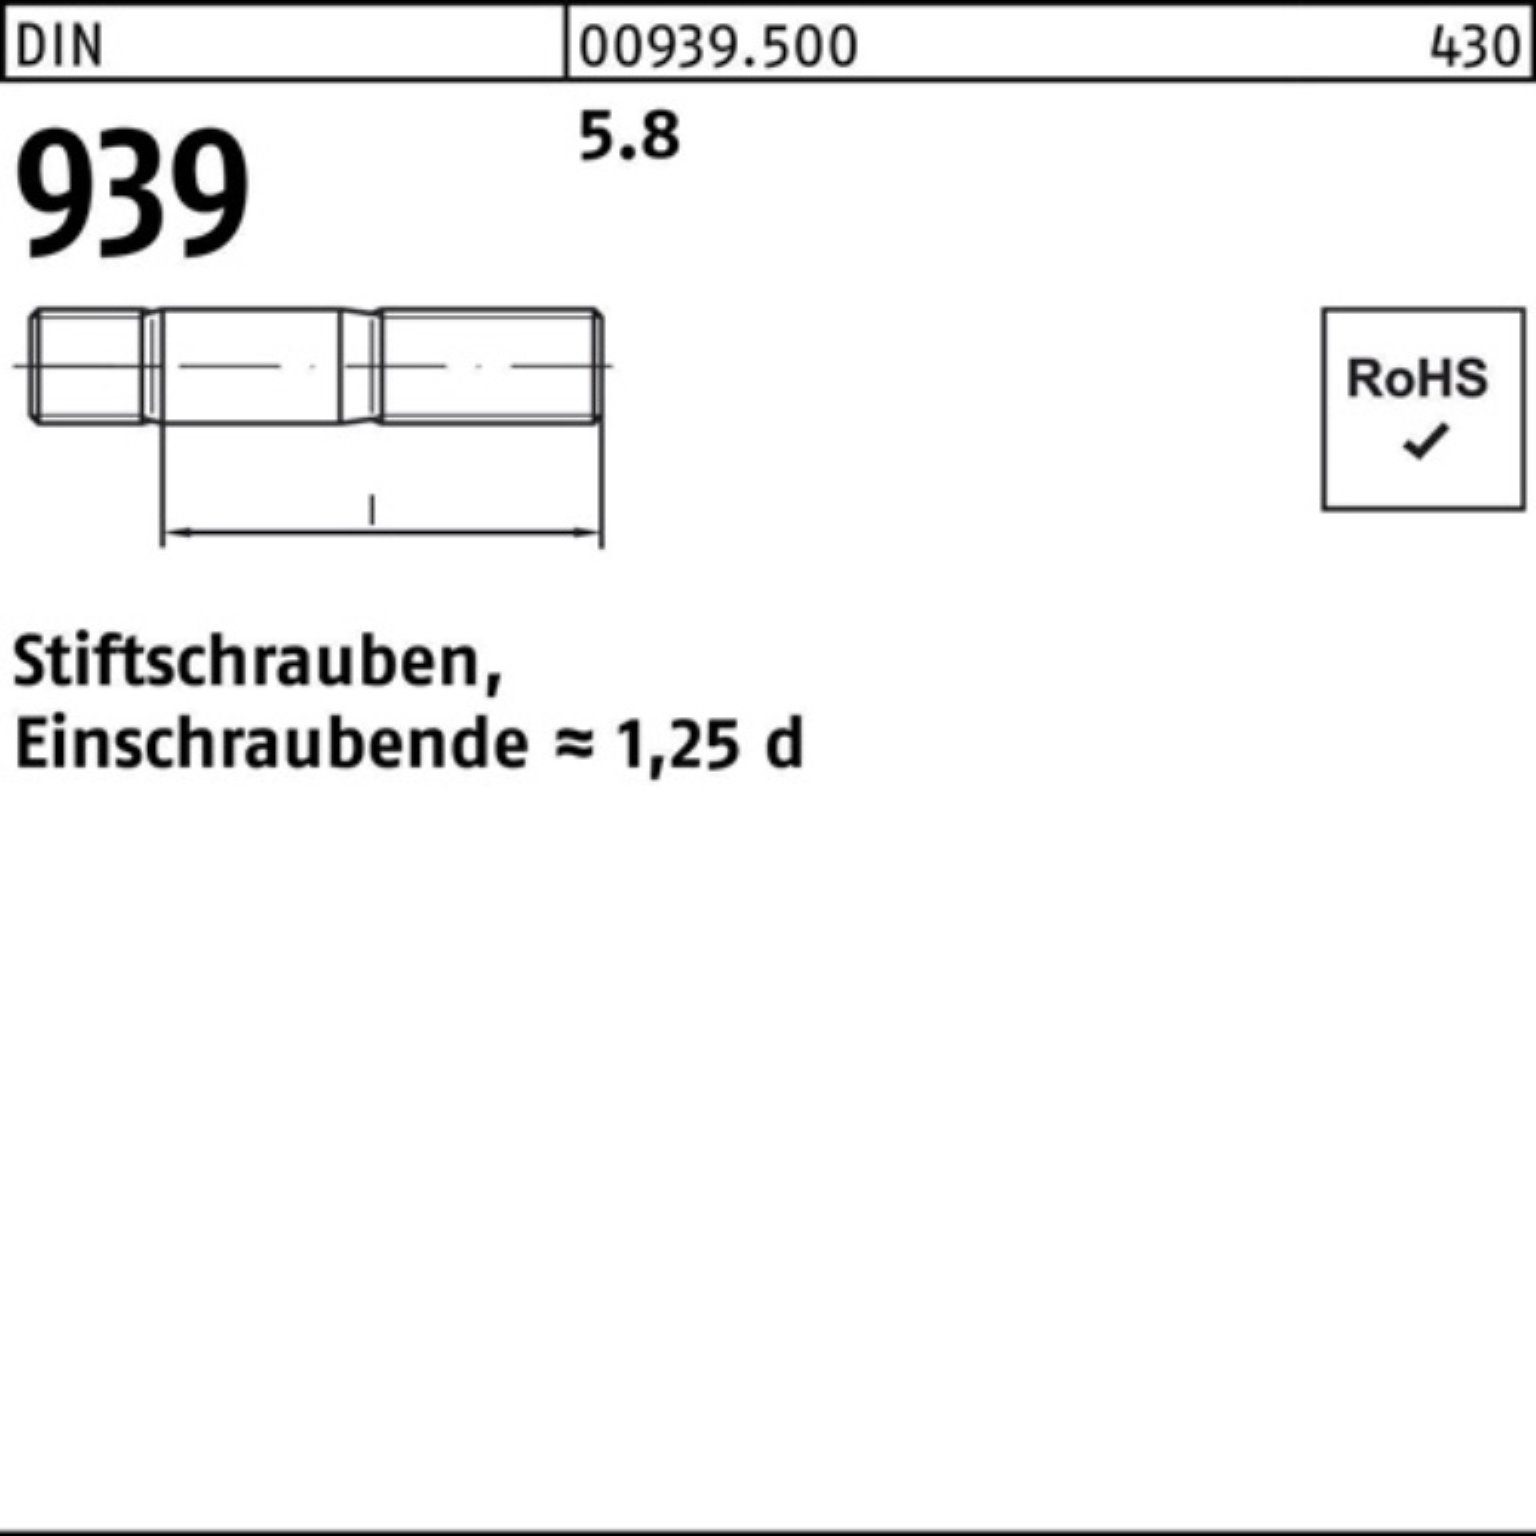 Reyher Stiftschraube 100er Stiftschraube 5.8 Pack S 50 65 DIN Einschraubende=1,25d 939 M12x